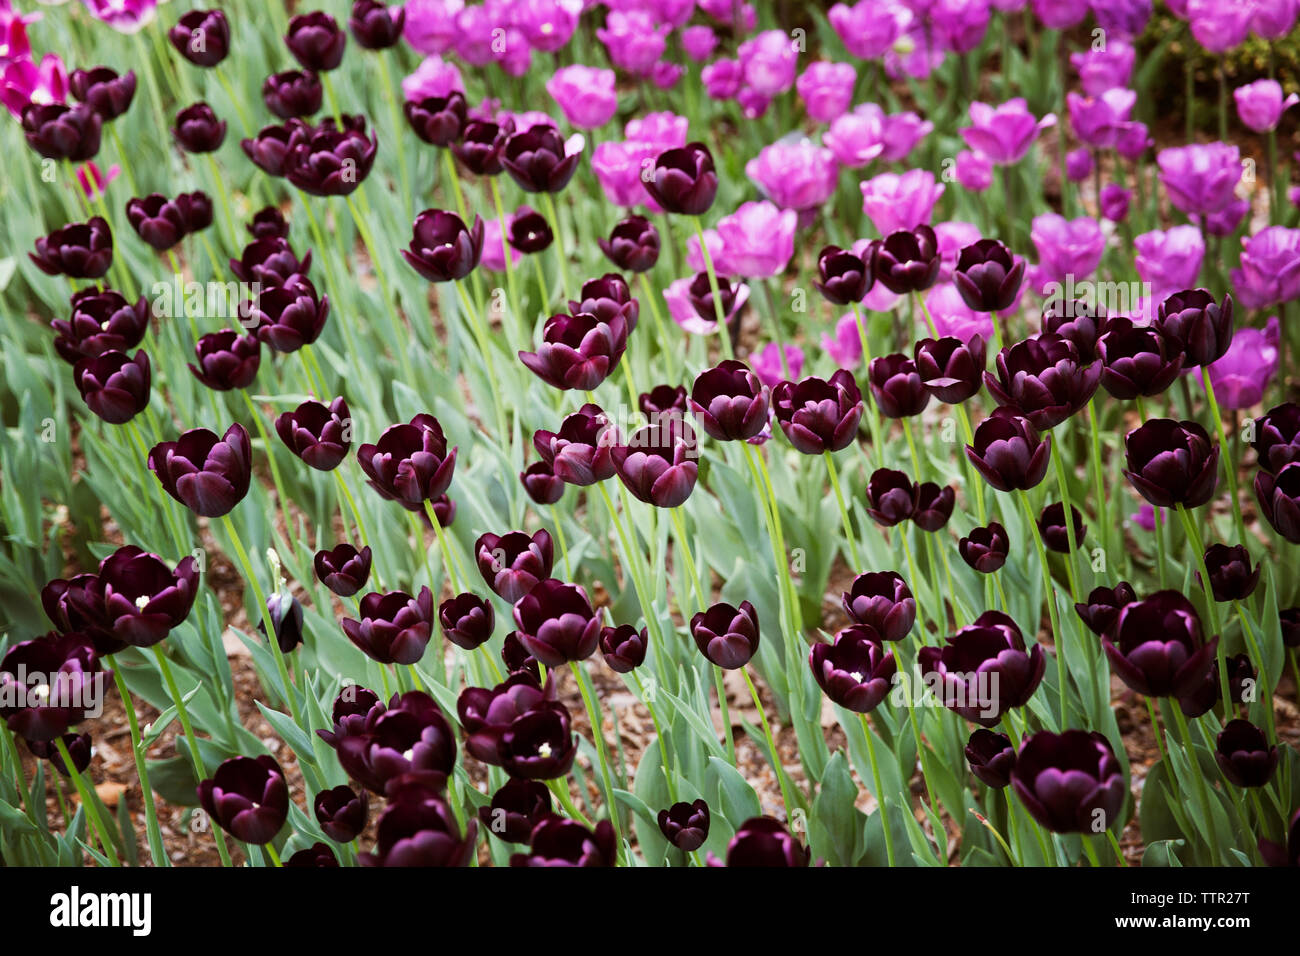 Un alto ángulo de visualización de tulipanes púrpura florece en el campo Foto de stock